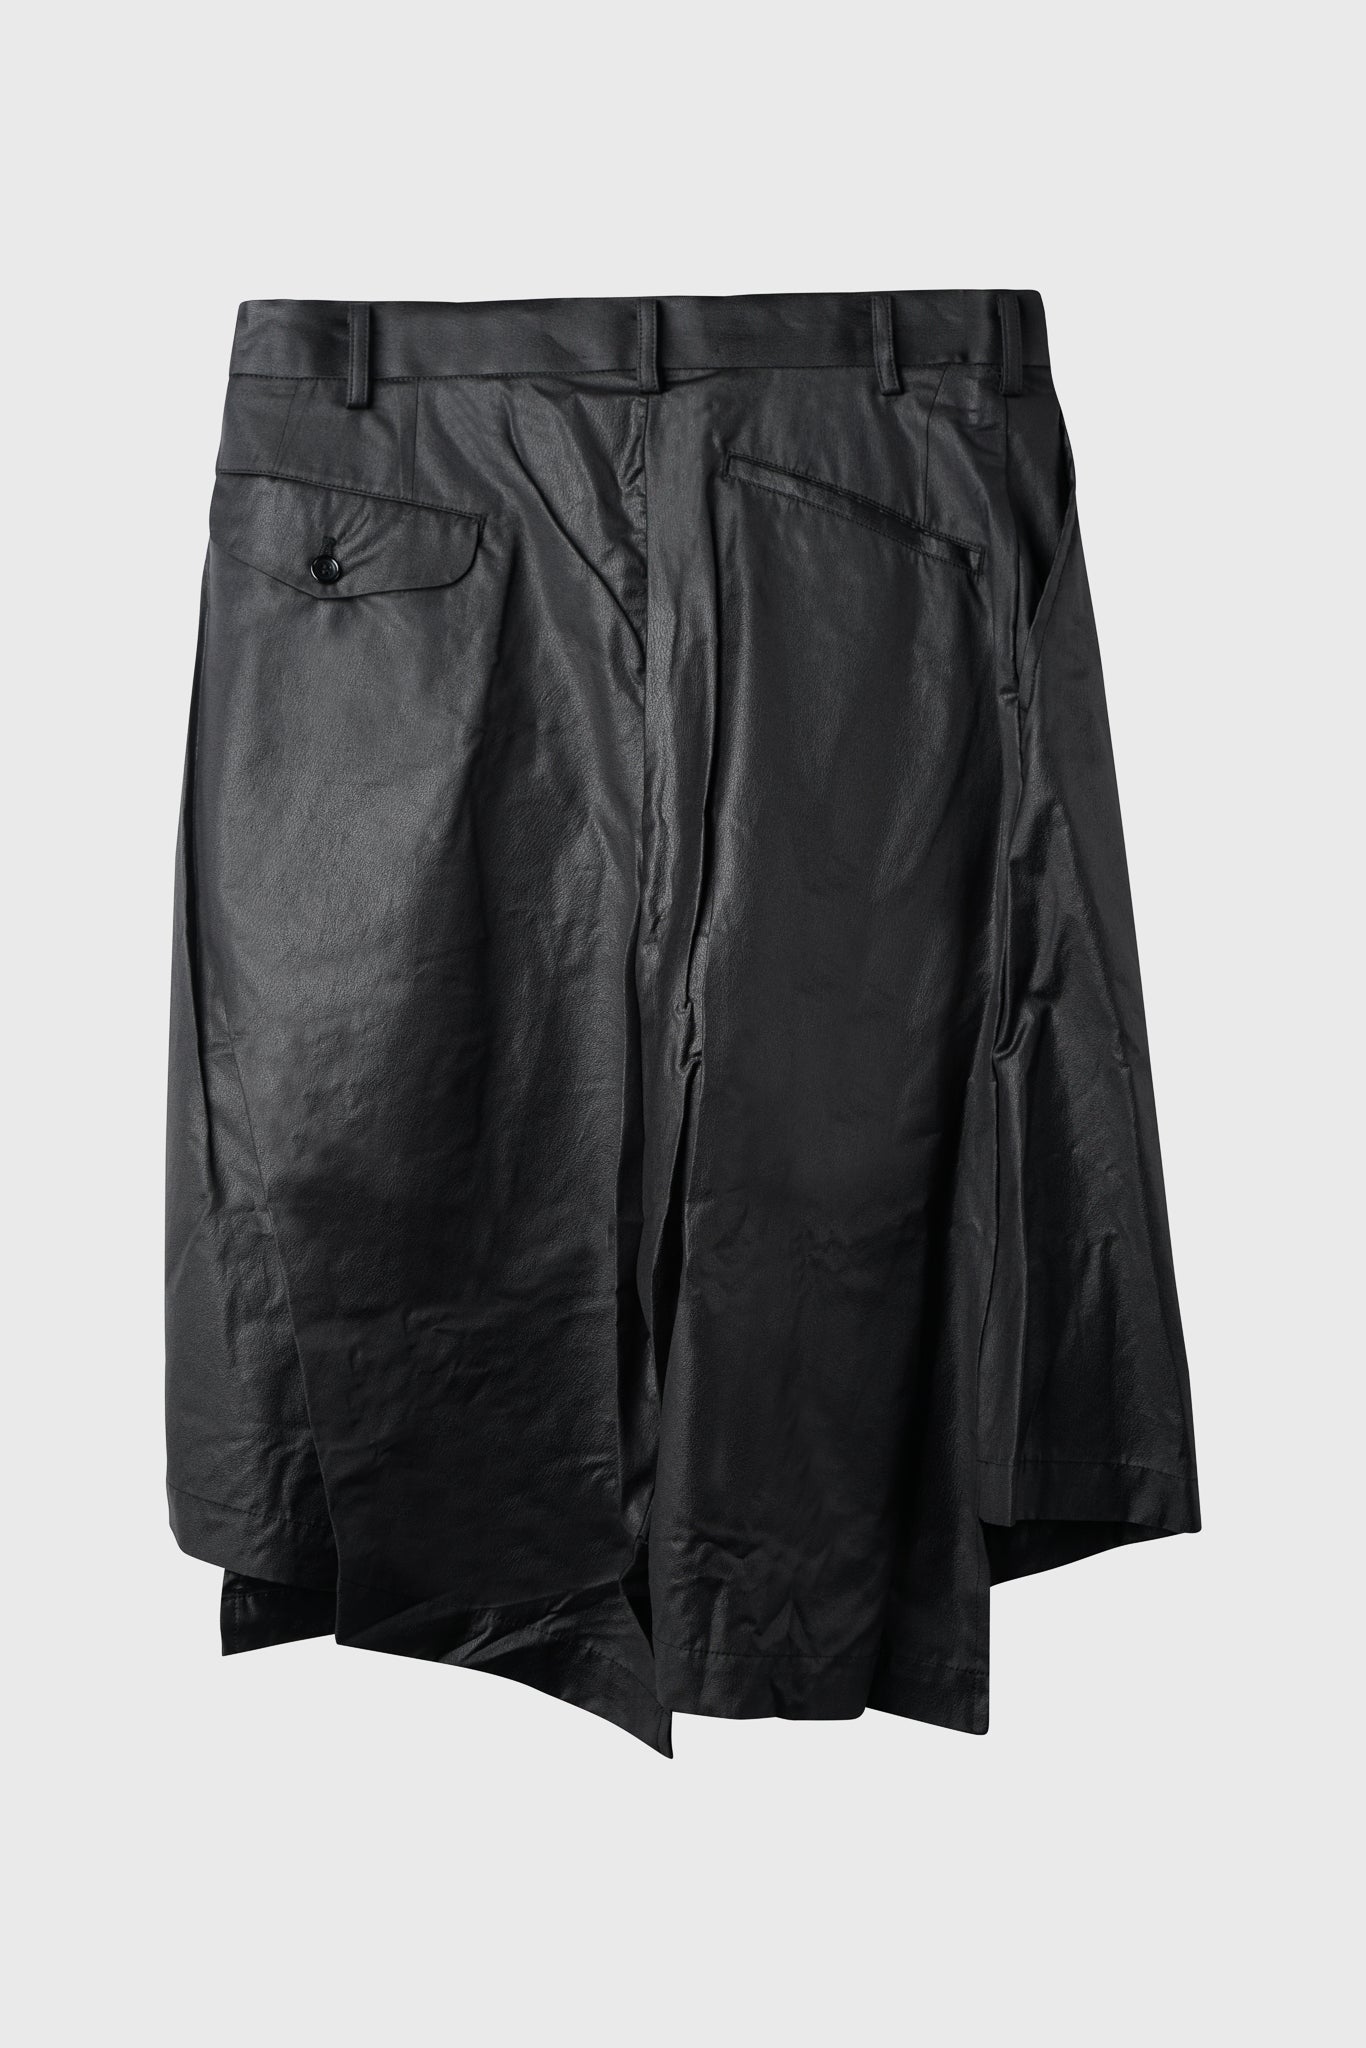 Selectshop FRAME - COMME DES GARÇONS BLACK Asymmetrical Shorts Black Bottoms Dubai